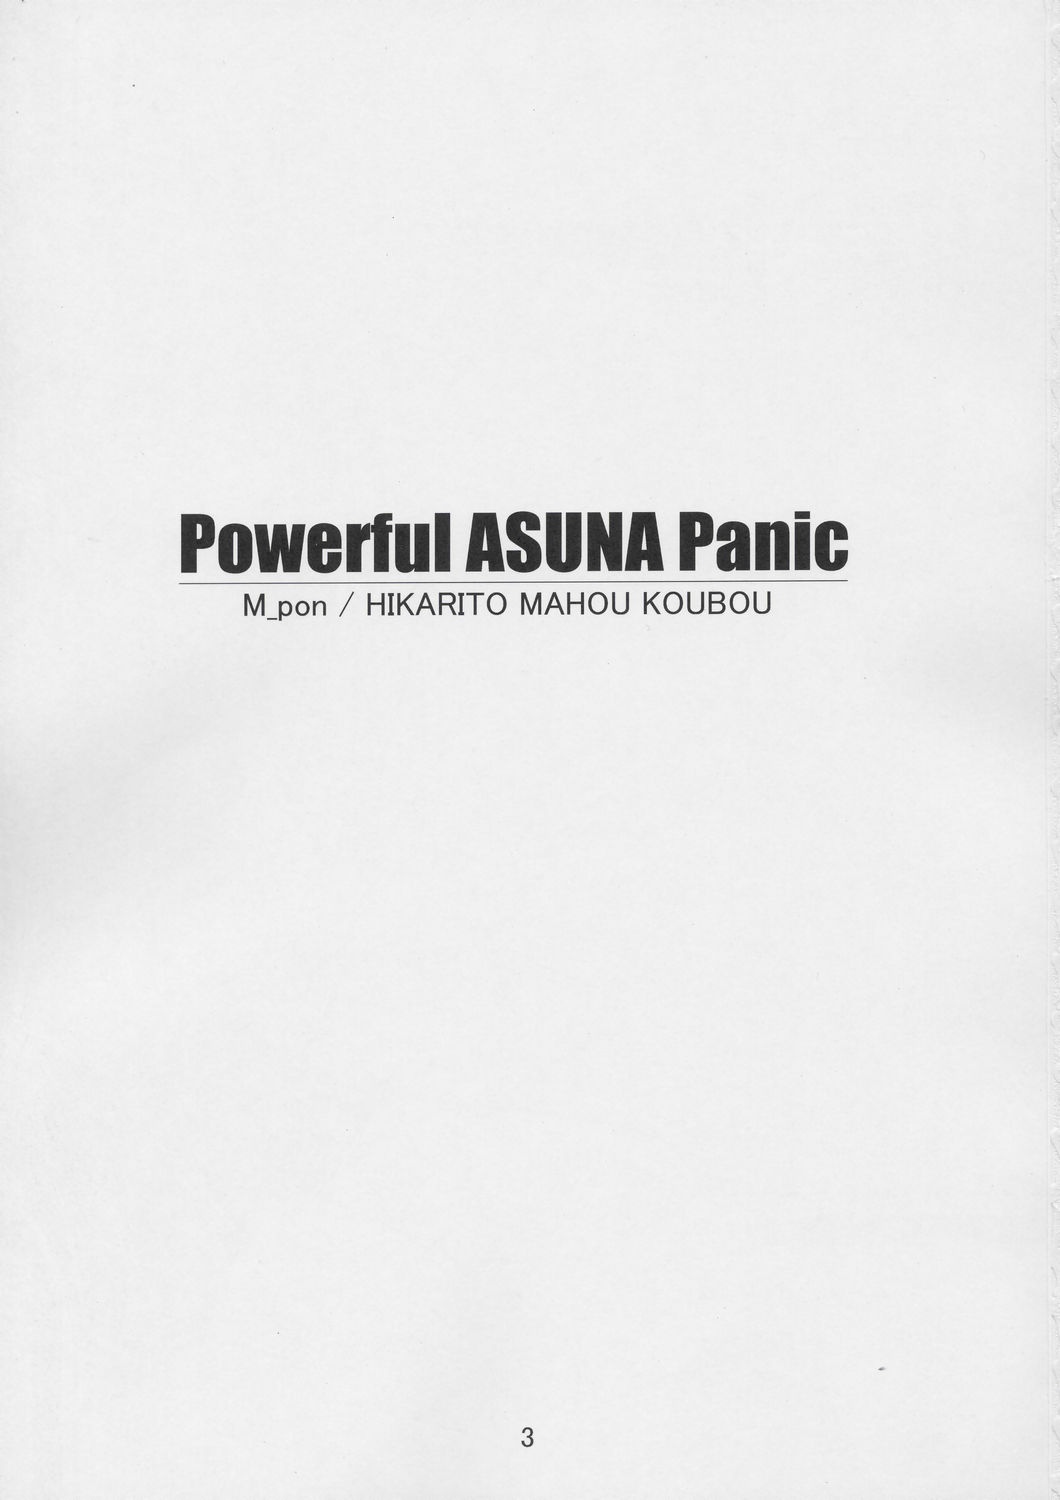 (CR36) [Hikarito Mahou Koubou (M_pon)] Powerful ASUNA Panic (Mahou Sensei Negima!) page 2 full